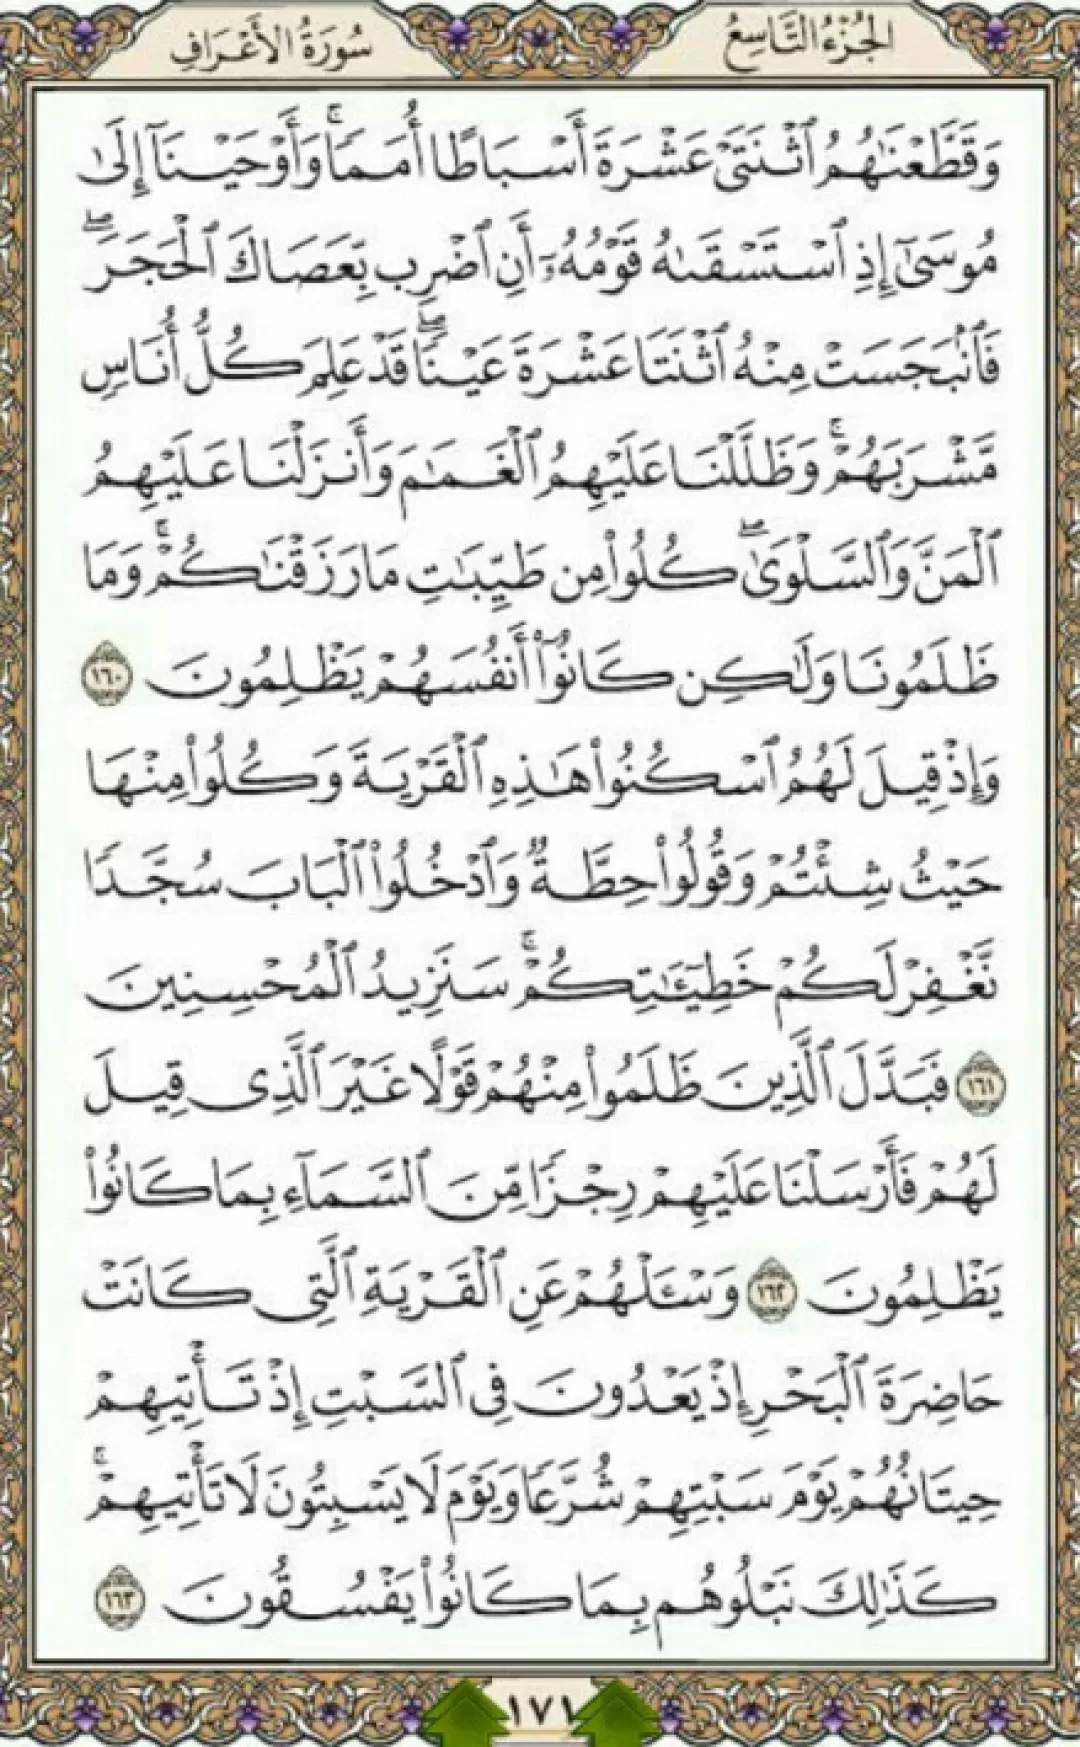 روزانه یک صفحه با شمیم الهی قرآن